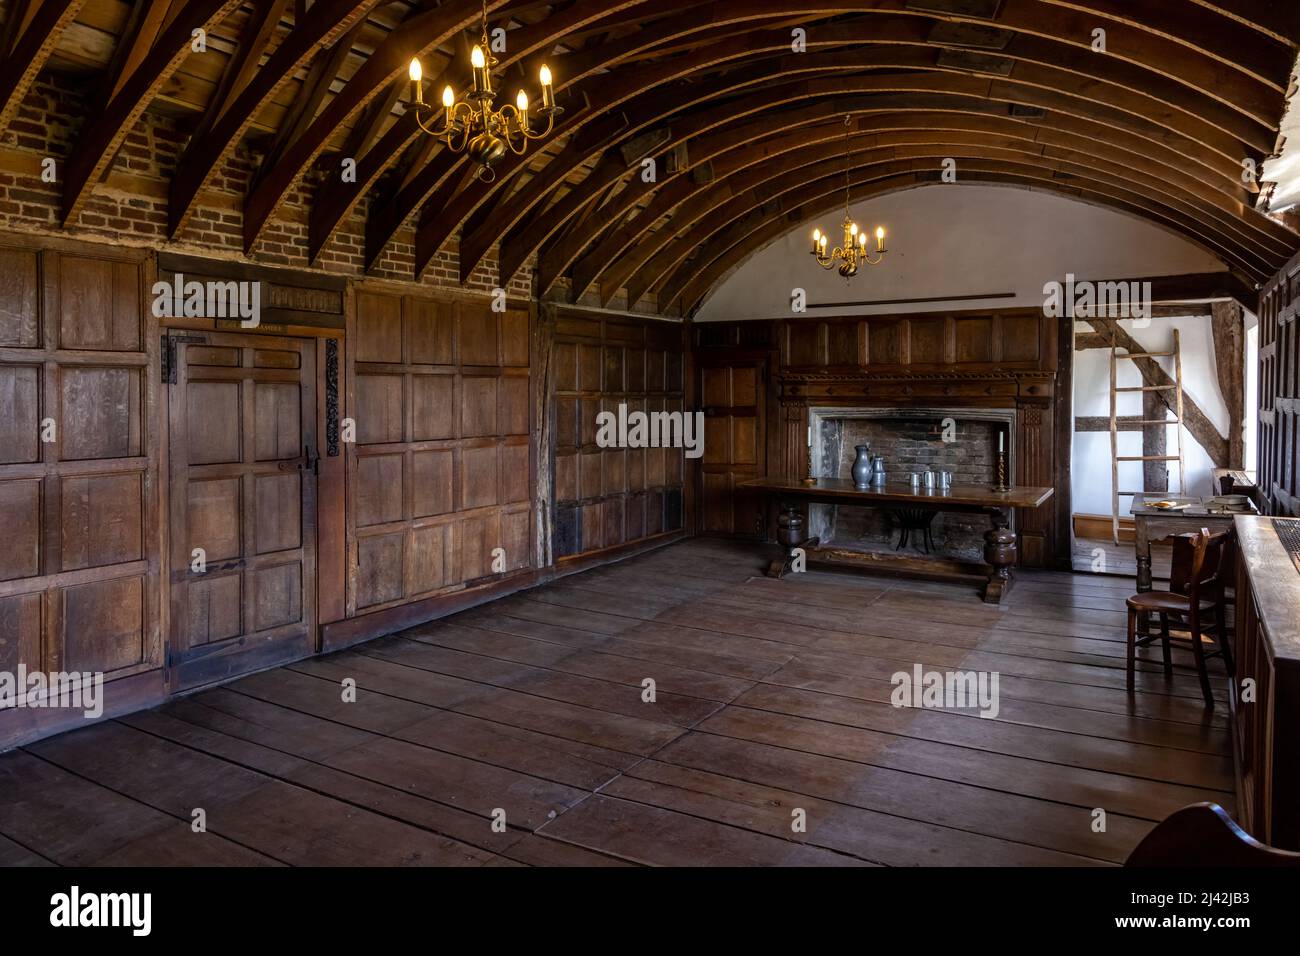 The Retraendo Room senza il soffitto in Harmington Hall, una casa medievale e elisabettiana del 16th secolo in Worcestershire, Inghilterra. Foto Stock